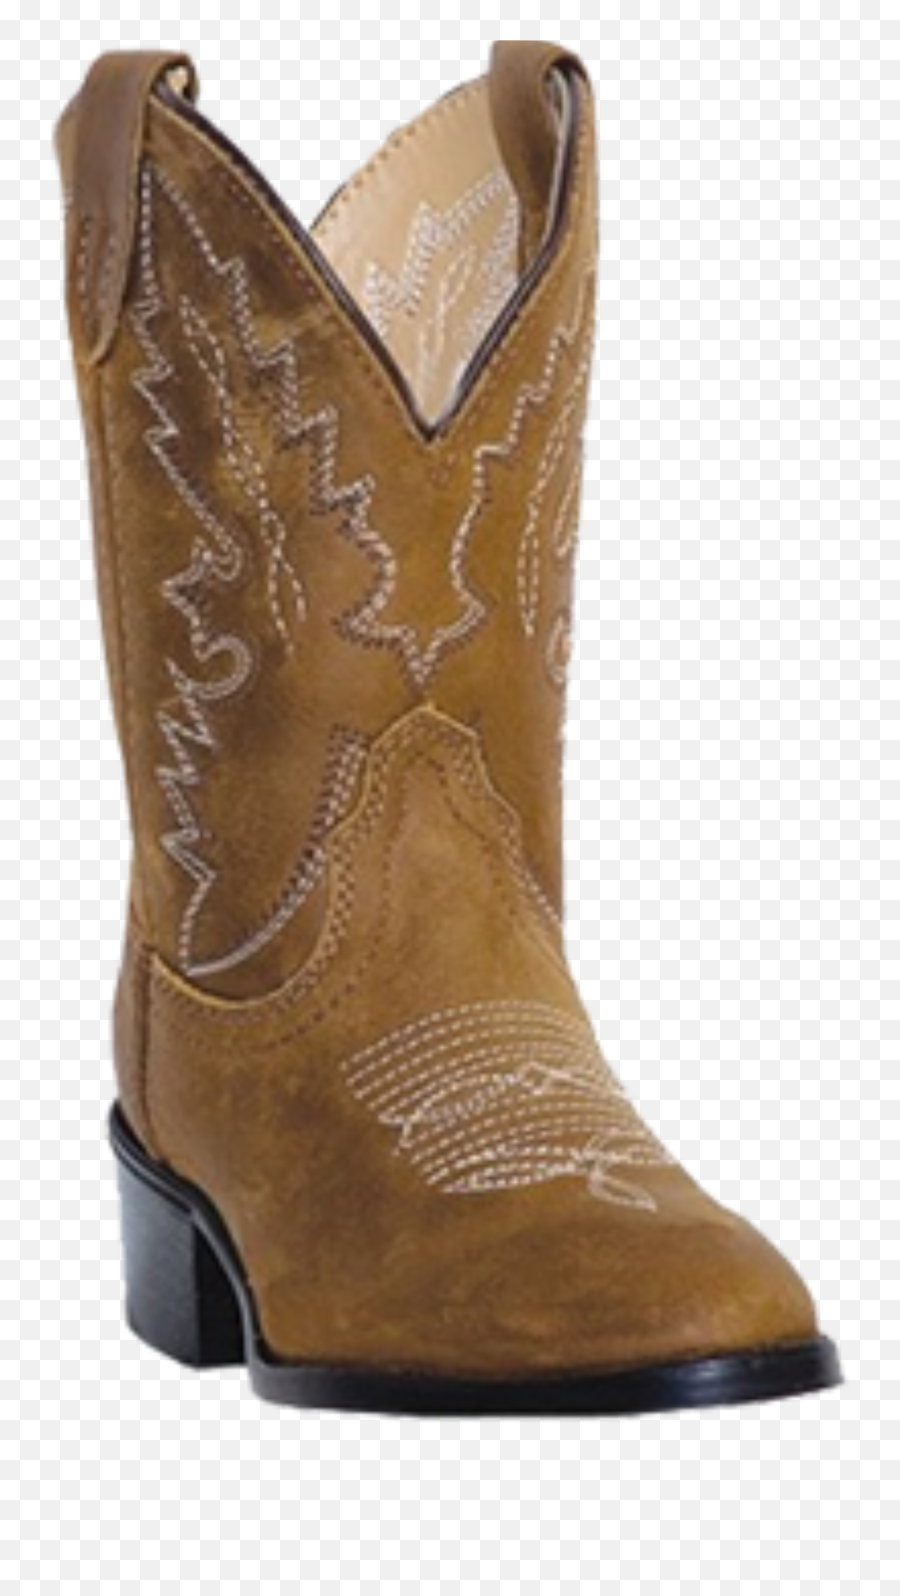 The Most Edited Cowboyboots Picsart - Durango Boot Emoji,Cowboy Boot Emoticon